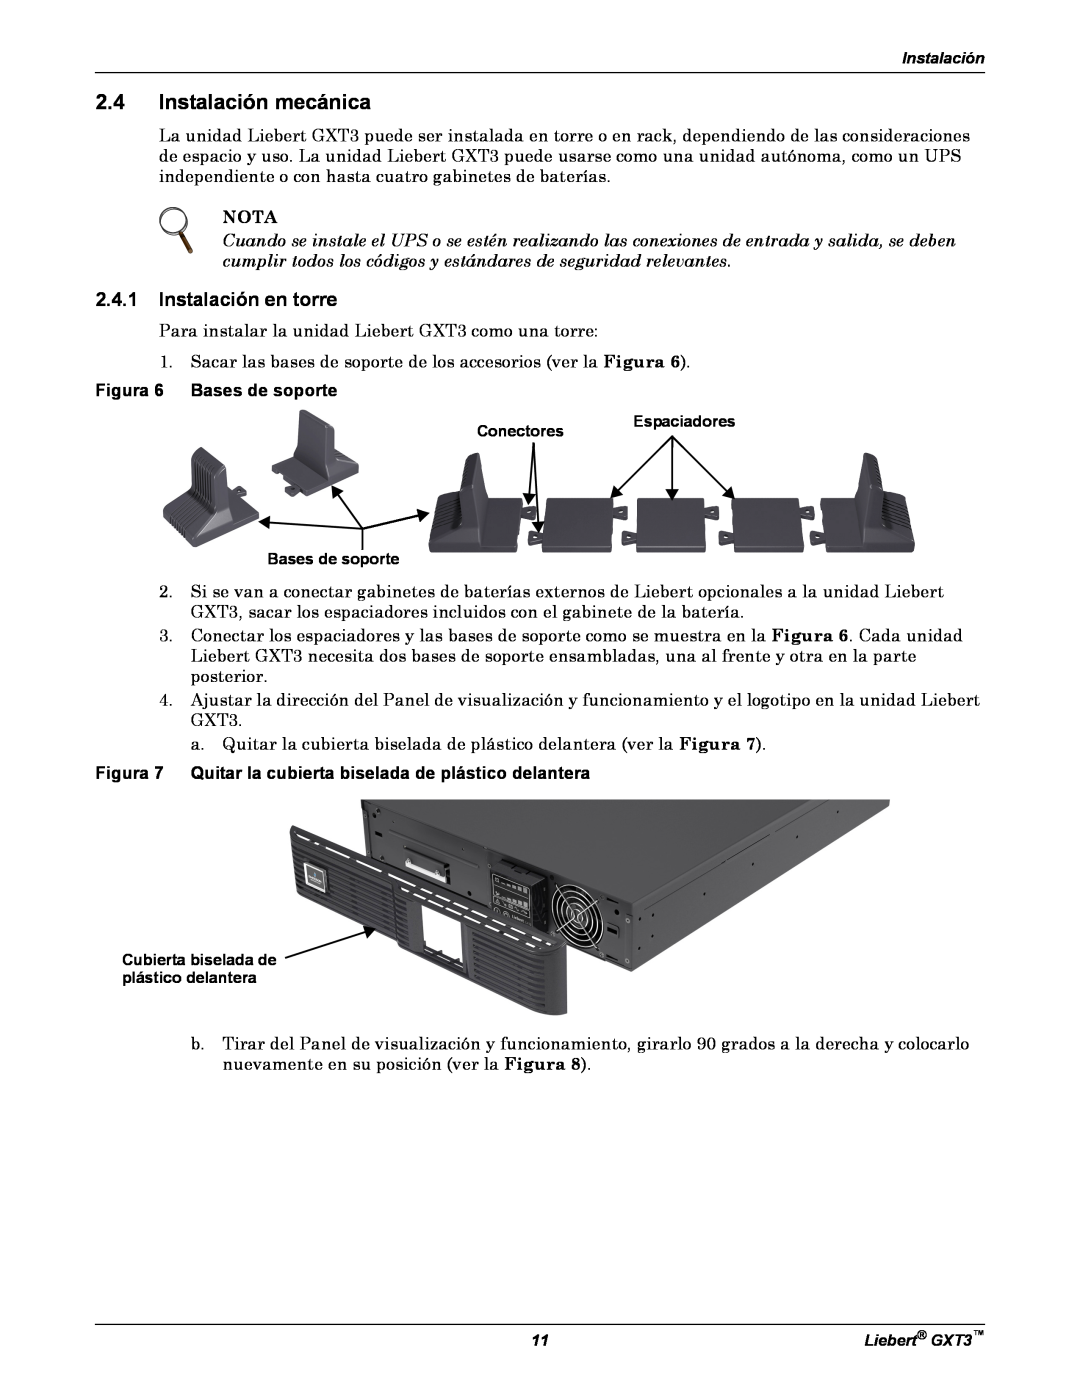 Emerson GXT3 manual Instalación mecánica, Instalación en torre, Nota, Figura 6 Bases de soporte 